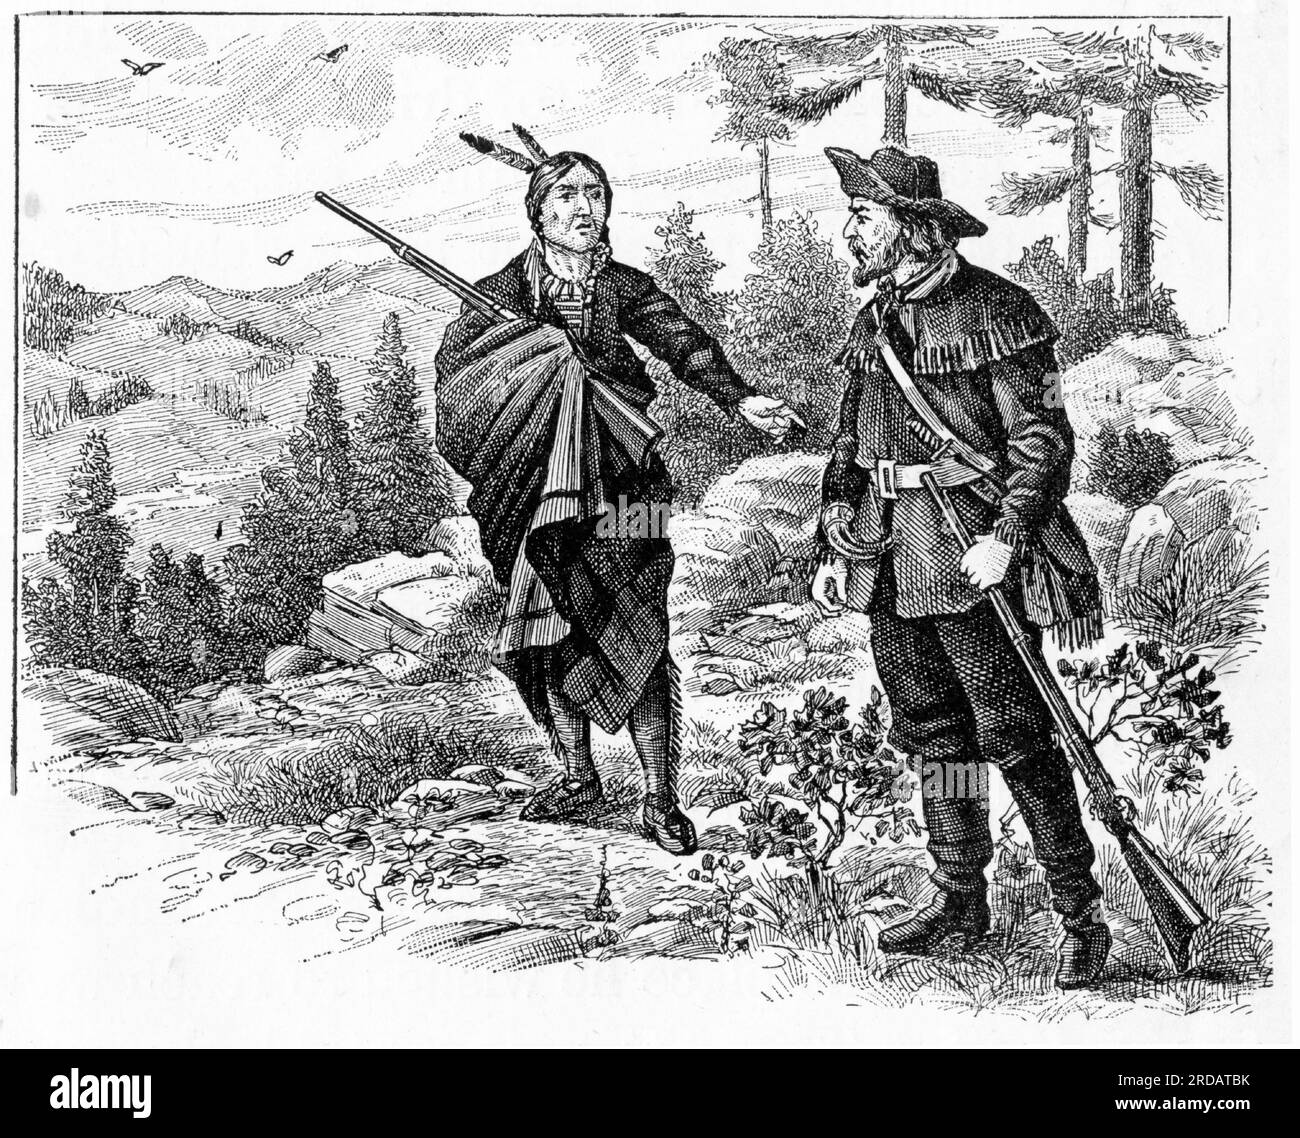 Gravure d'un indien d'Amérique du Nord et d'un pionnier européen des bois dans la forêt, vers 1880 Banque D'Images